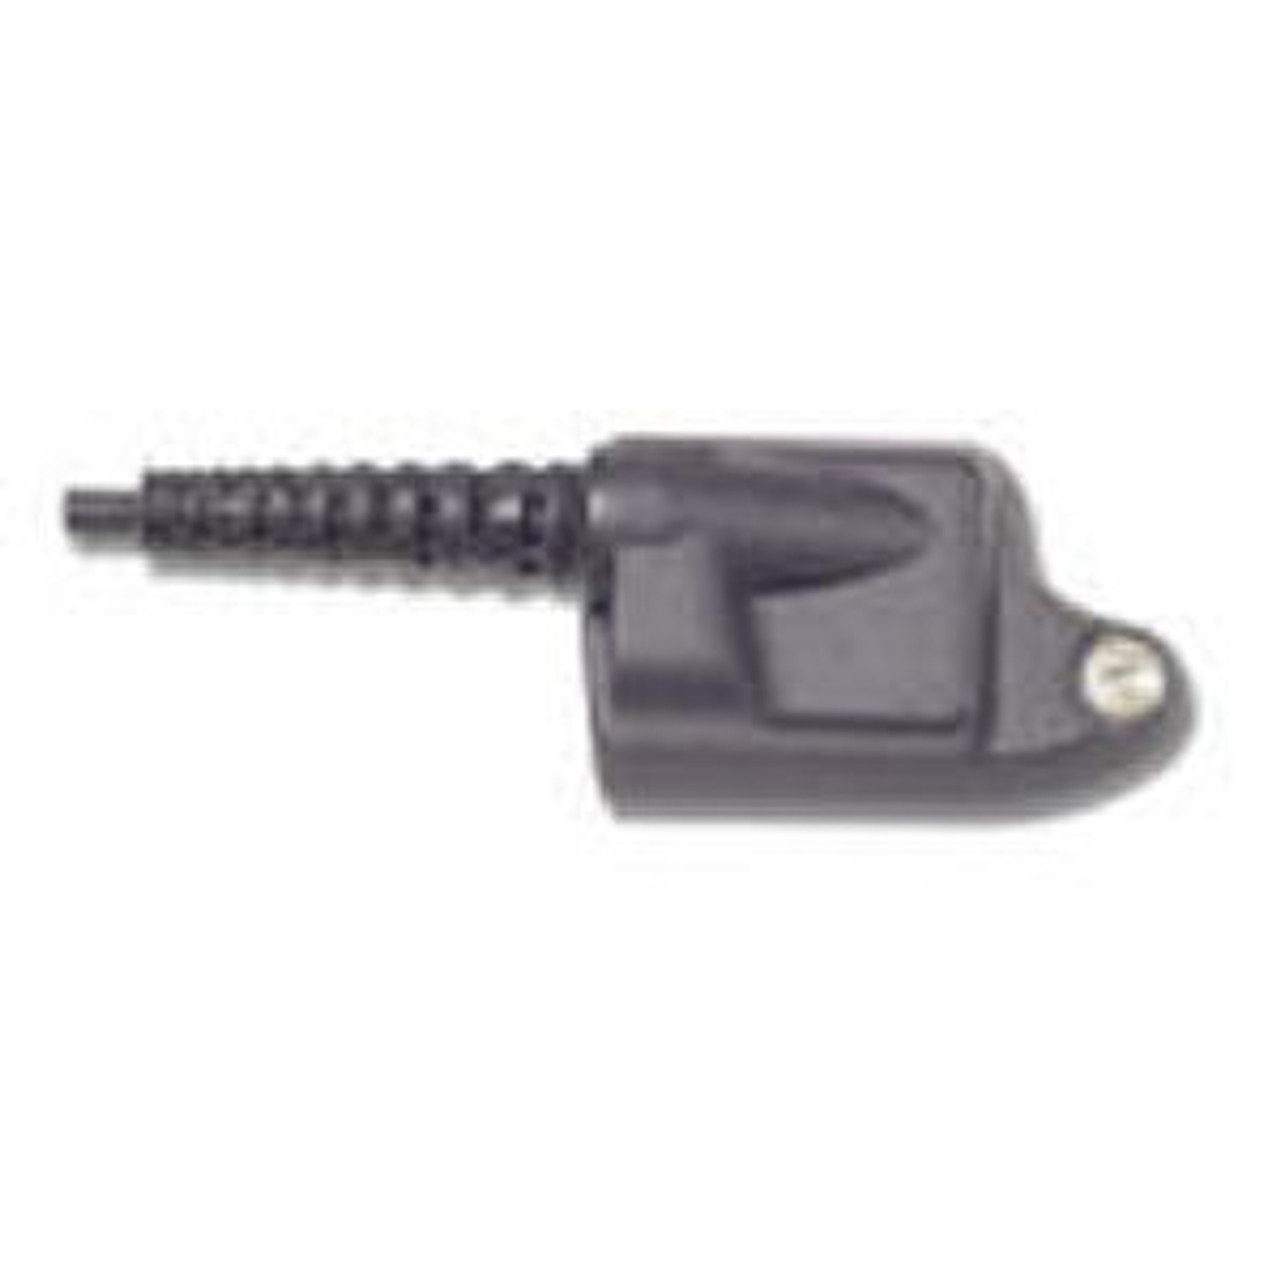 M/A-Com P5170 3-Wire/3.5mm Female Surveillance Kit